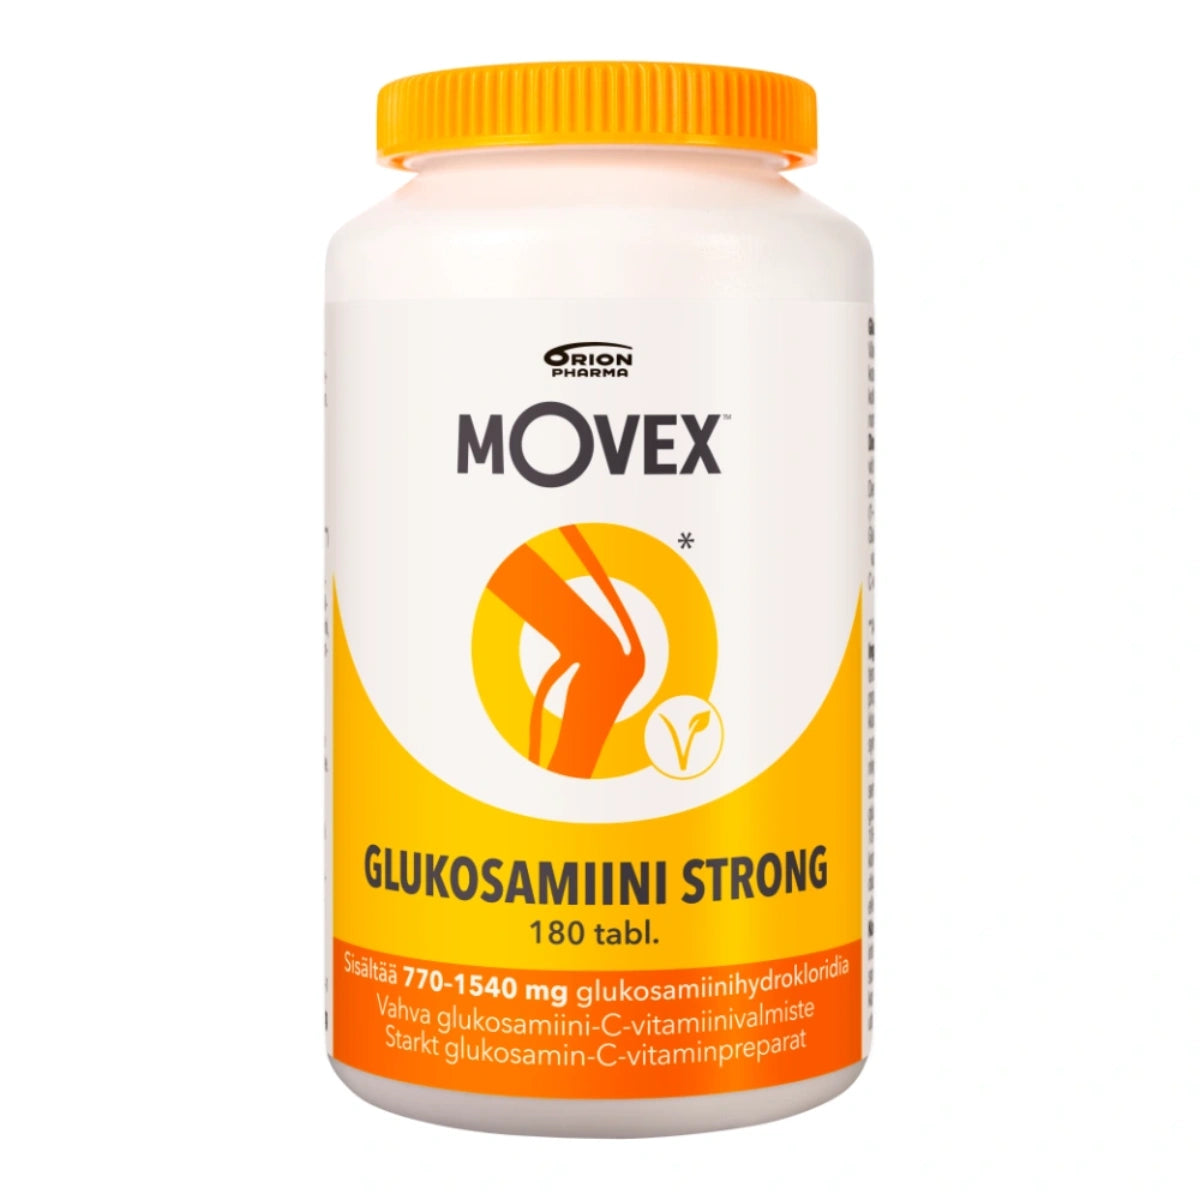 MOVEX Glukosamiini Strong tabletti 180 kpl vahva ja täysin kasvipohjainen (fermentoitu) glukosamiini-C-vitamiinivalmiste nivelten hyvinvointiin